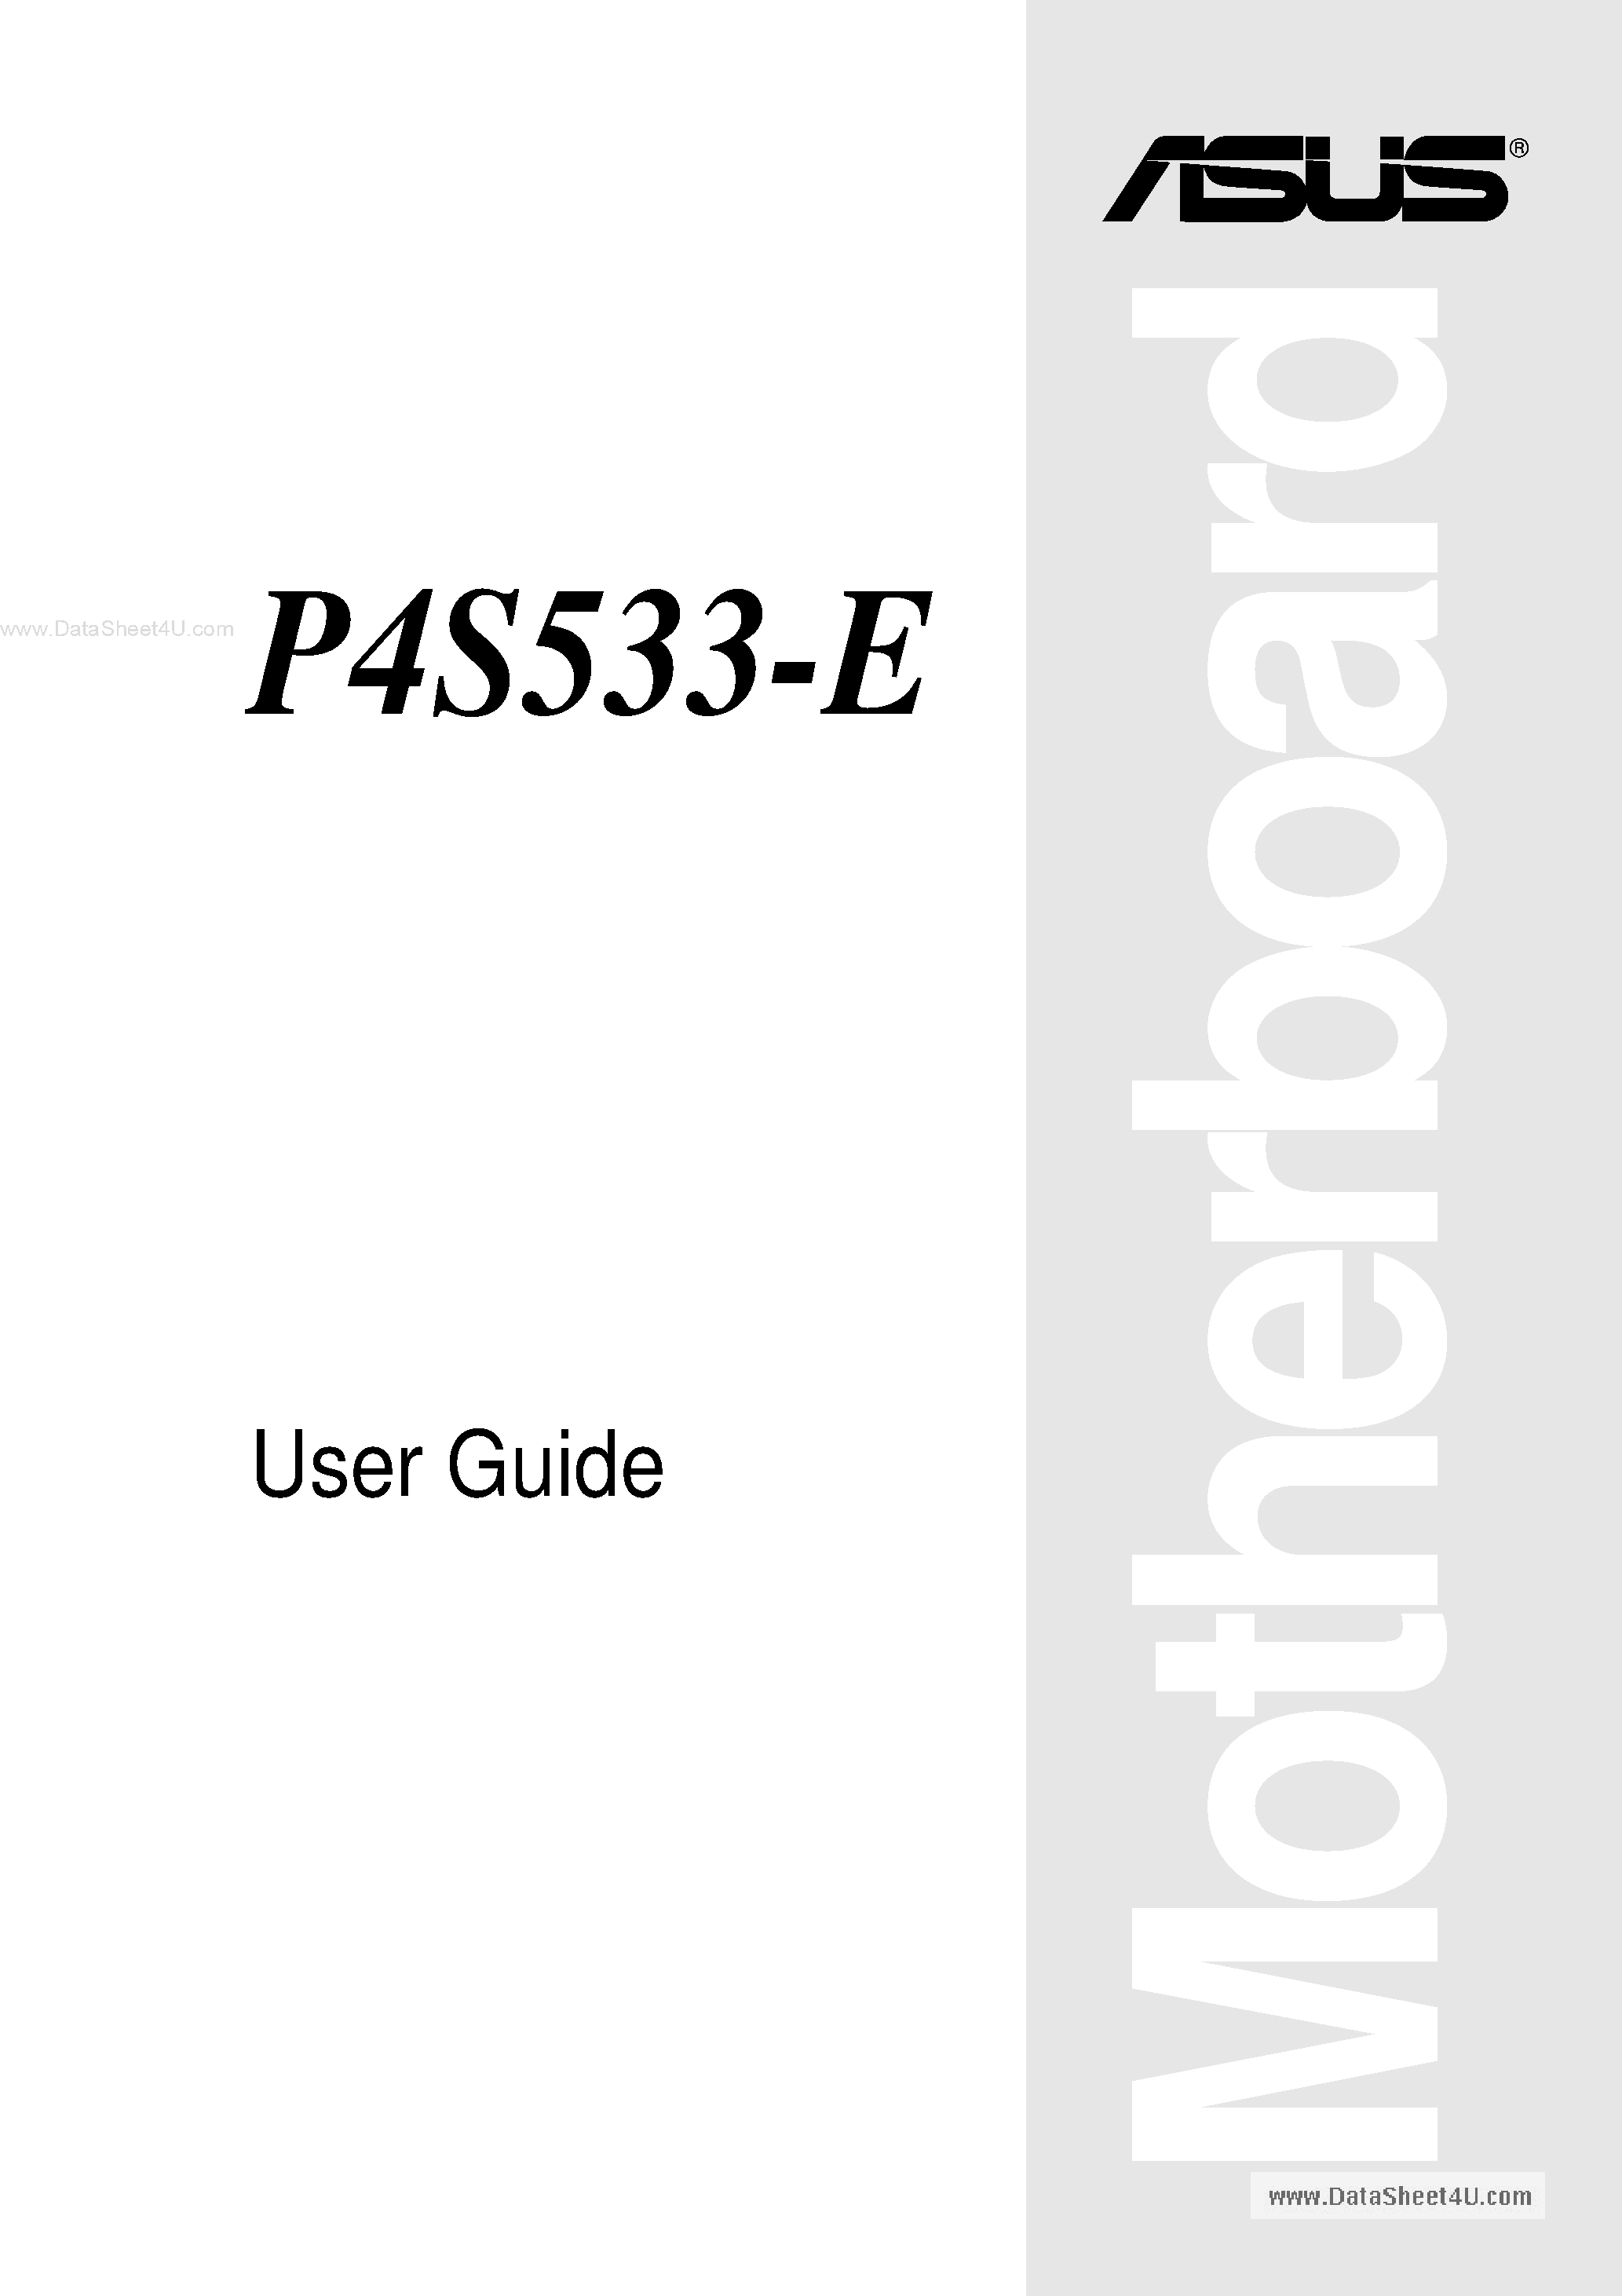 Даташит P4S533-E - User Guide страница 1